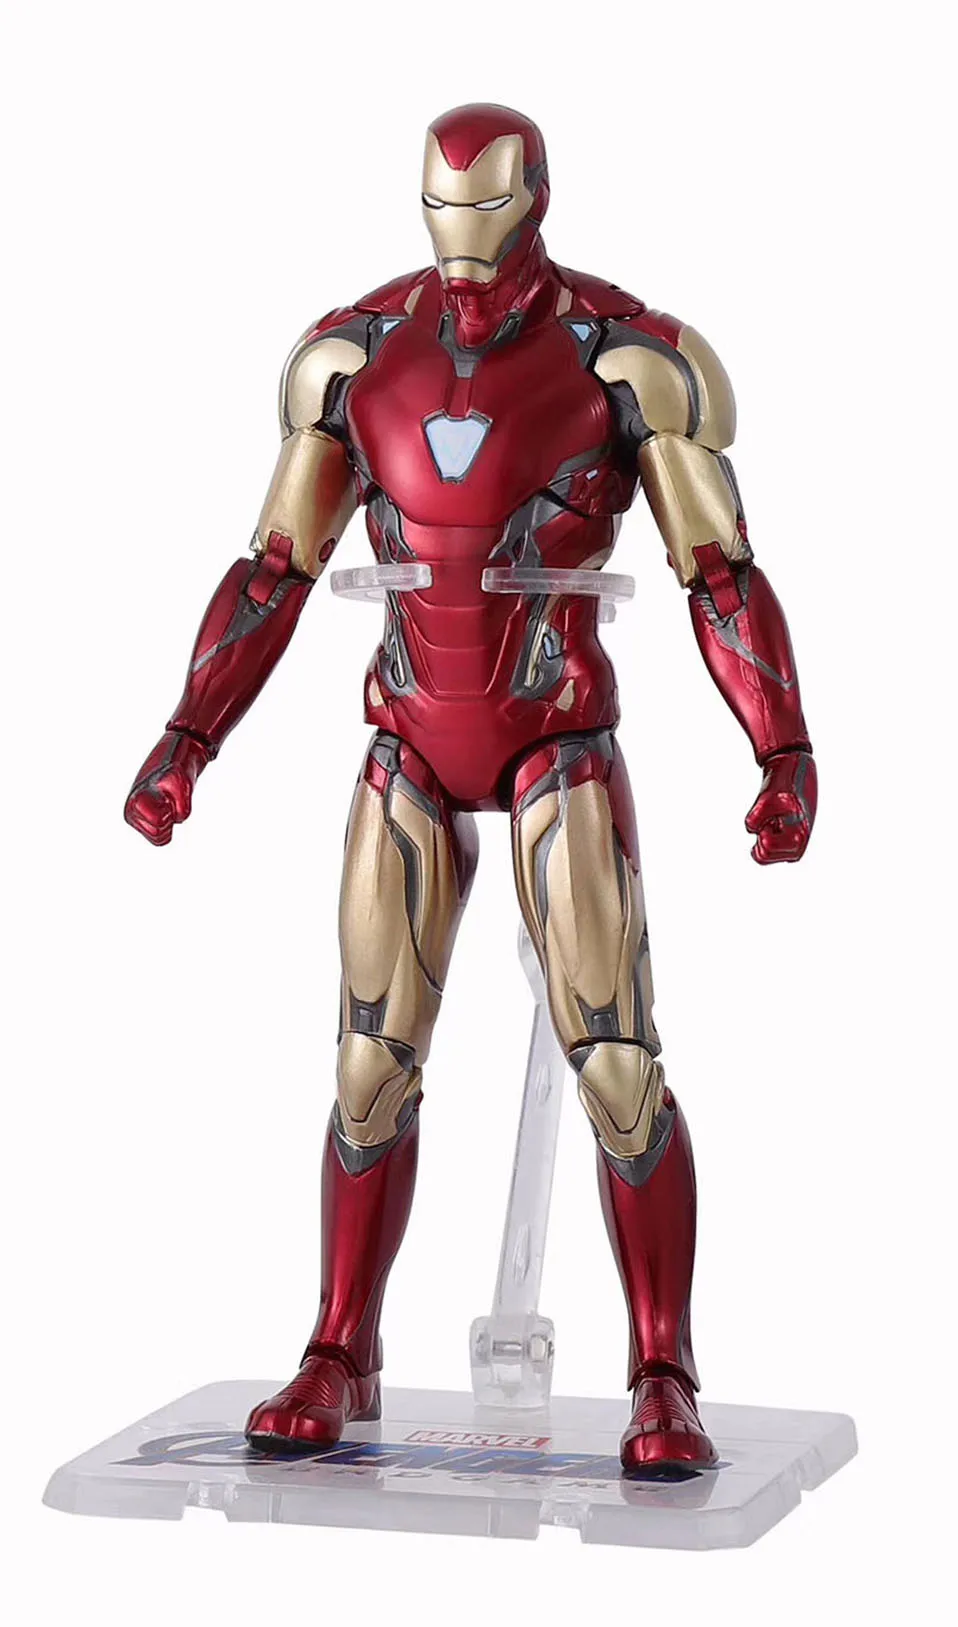 6 дюймов Marvel MK 85 Железный человек Мстители 3 Железный человек паук Тор Джеймс Родос подвижная фигурка модель игрушки для детей